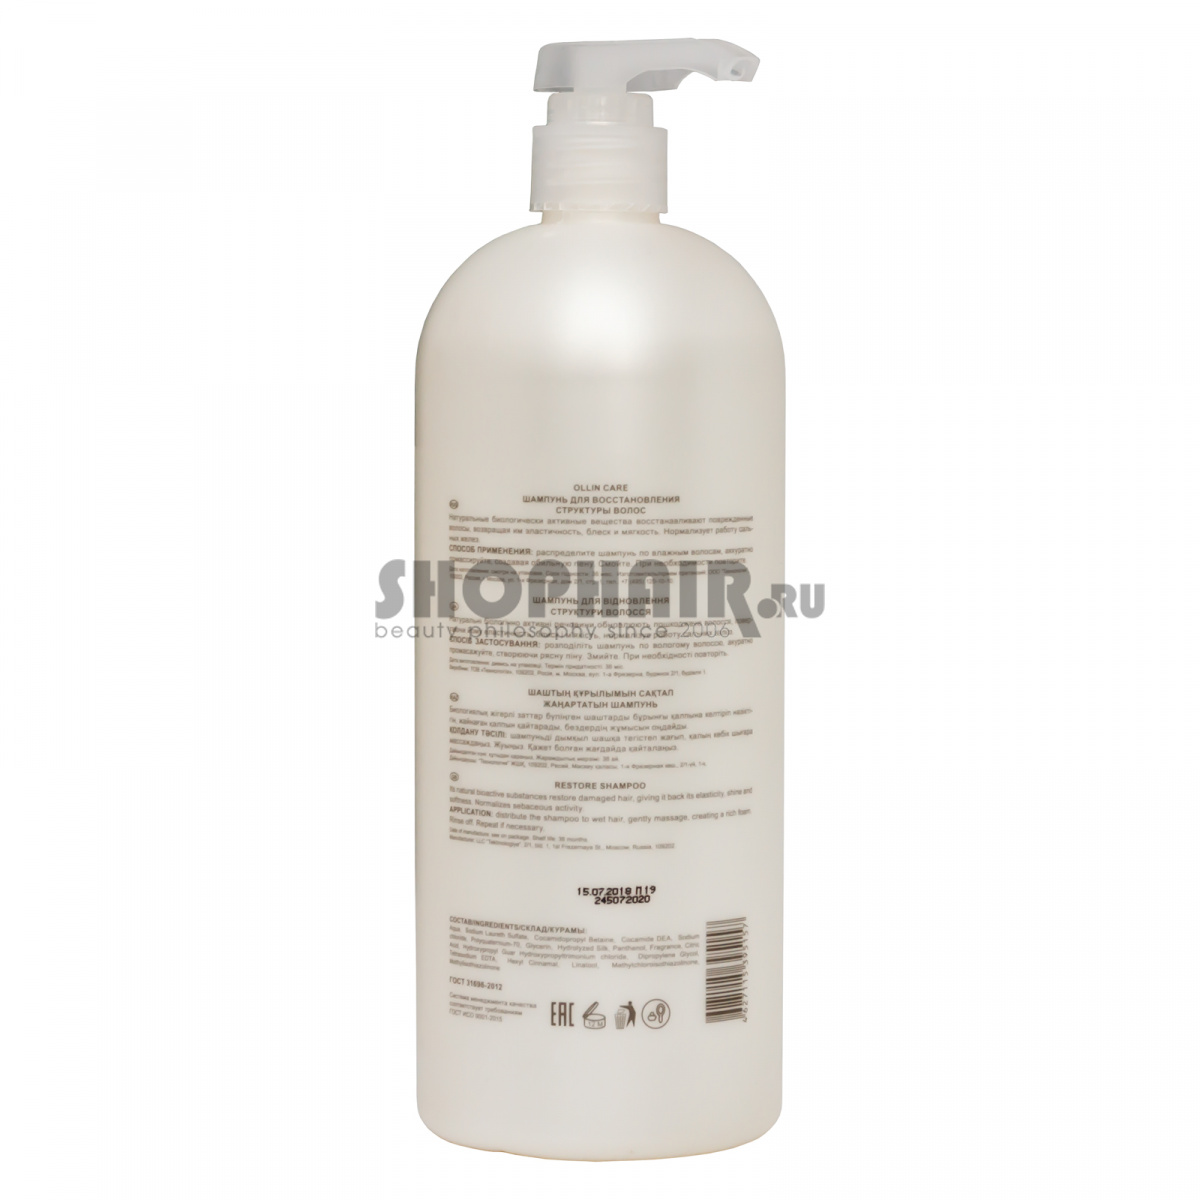 Ollin Professional Care Restore Shampoo - Шампунь для восстановления структуры волос 1000 мл Ollin Professional (Россия) купить по цене 753 руб.